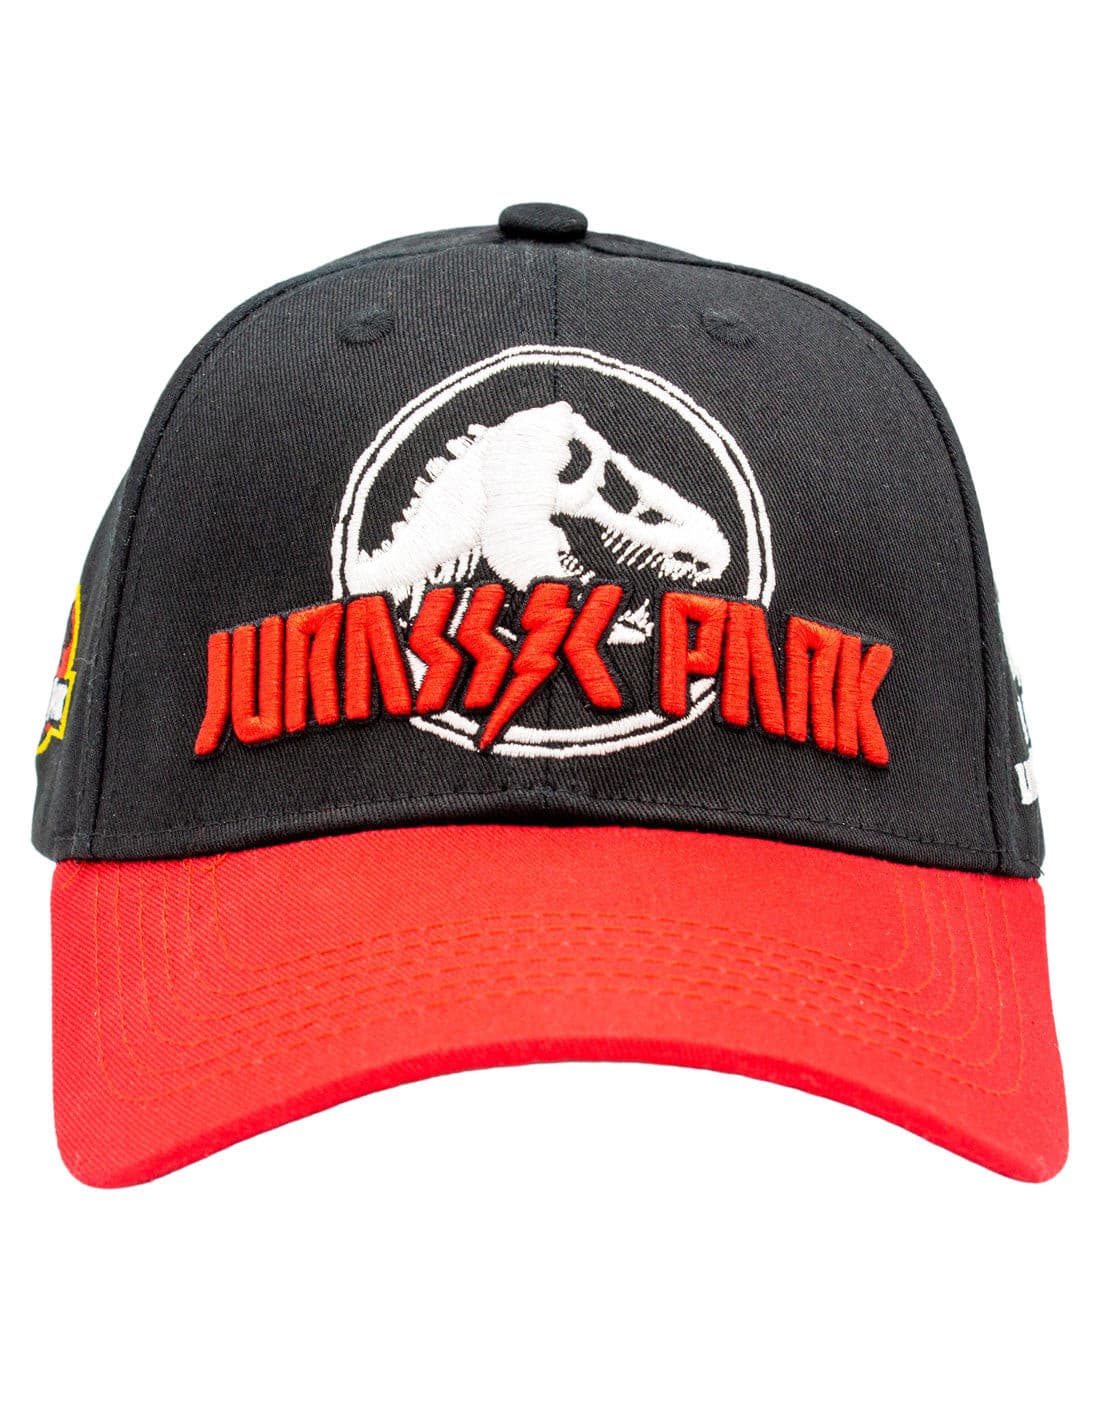 Jurassic Park - Chapéu Pala Curva Rock.